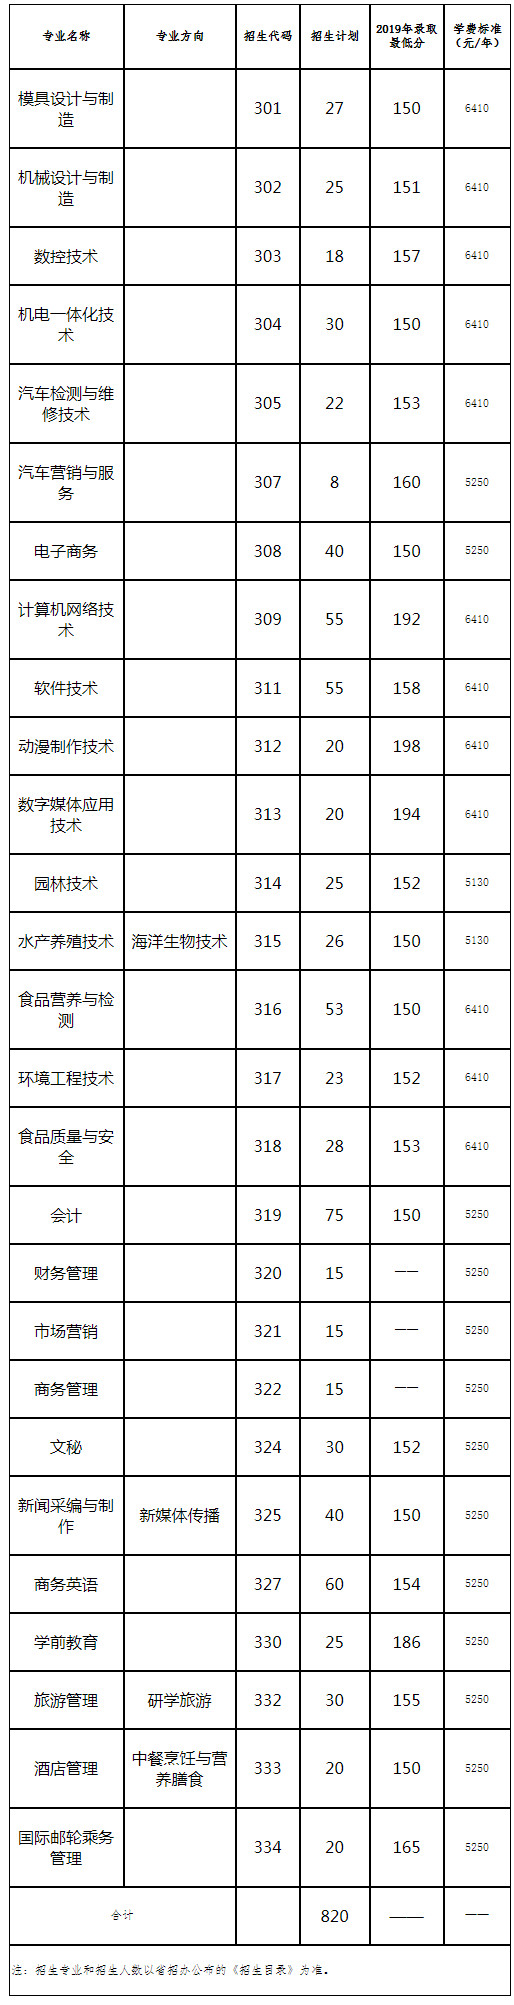 阳江职业技术学院2020年依据学考成绩录取“3+证书”类招生计划.jpg